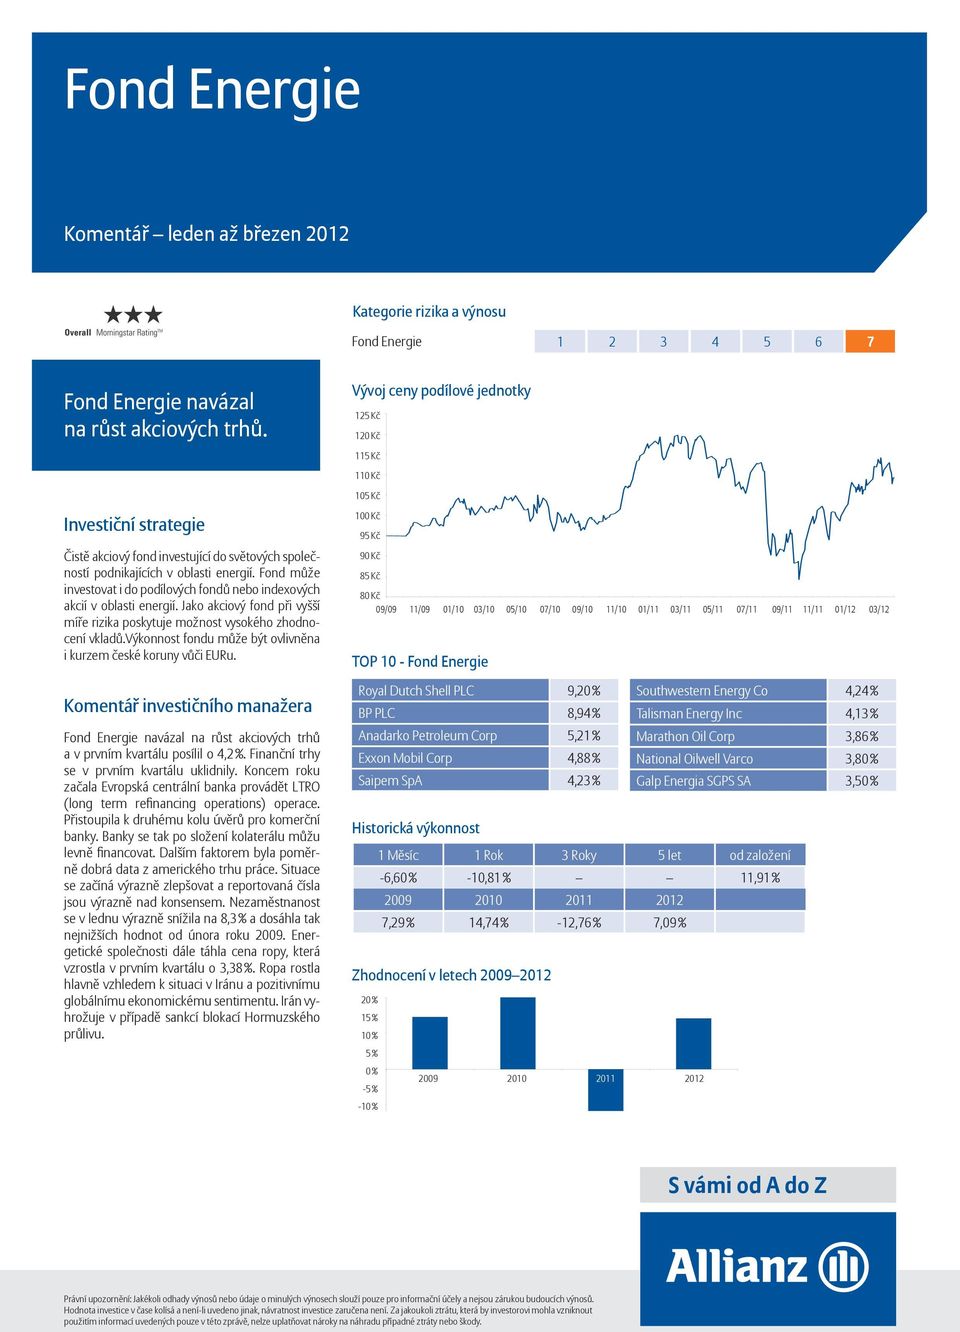 výkonnost fondu může být ovlivněna i kurzem české koruny vůči EURu. Fond Energie navázal na růst akciových trhů a v prvním kvartálu posílil o 4,2 %. Finanční trhy se v prvním kvartálu uklidnily.